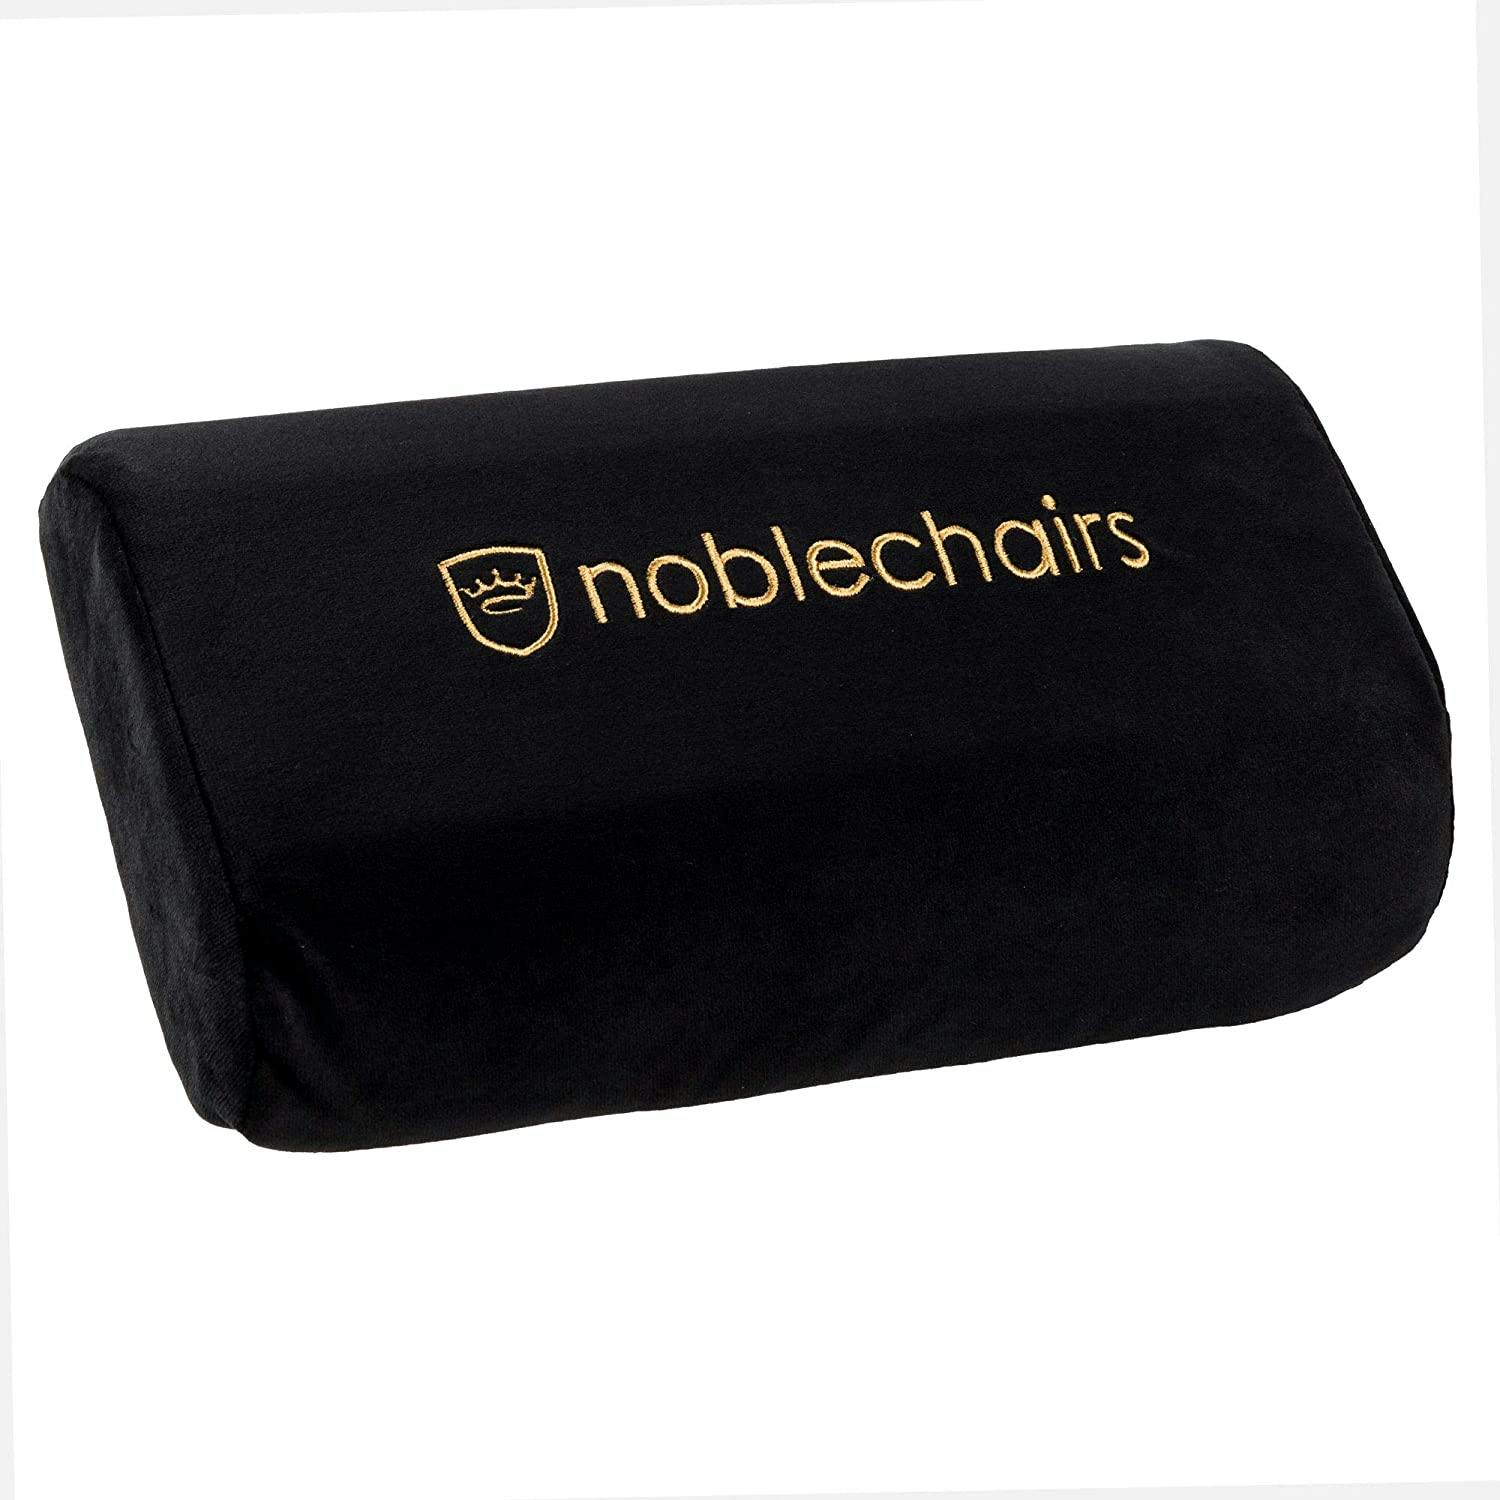 noblechairs - Juego de almohadas Negro/Oro